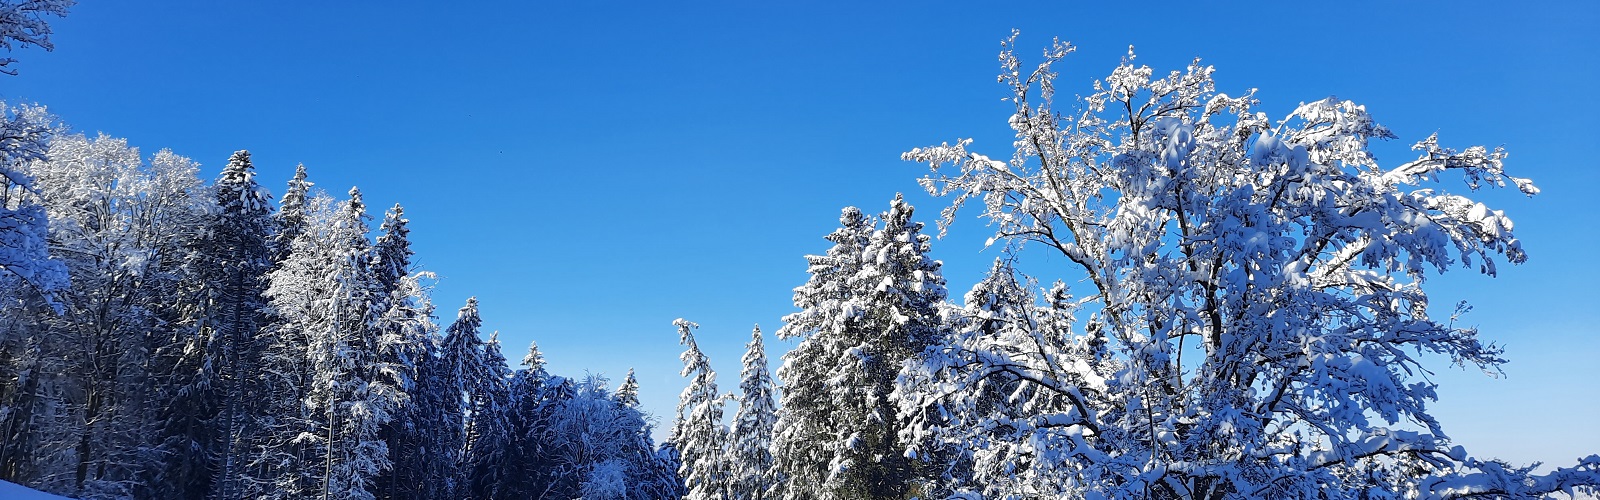 Das Bild zeigt Bäume voll Schnee vor einem blauem Himmel